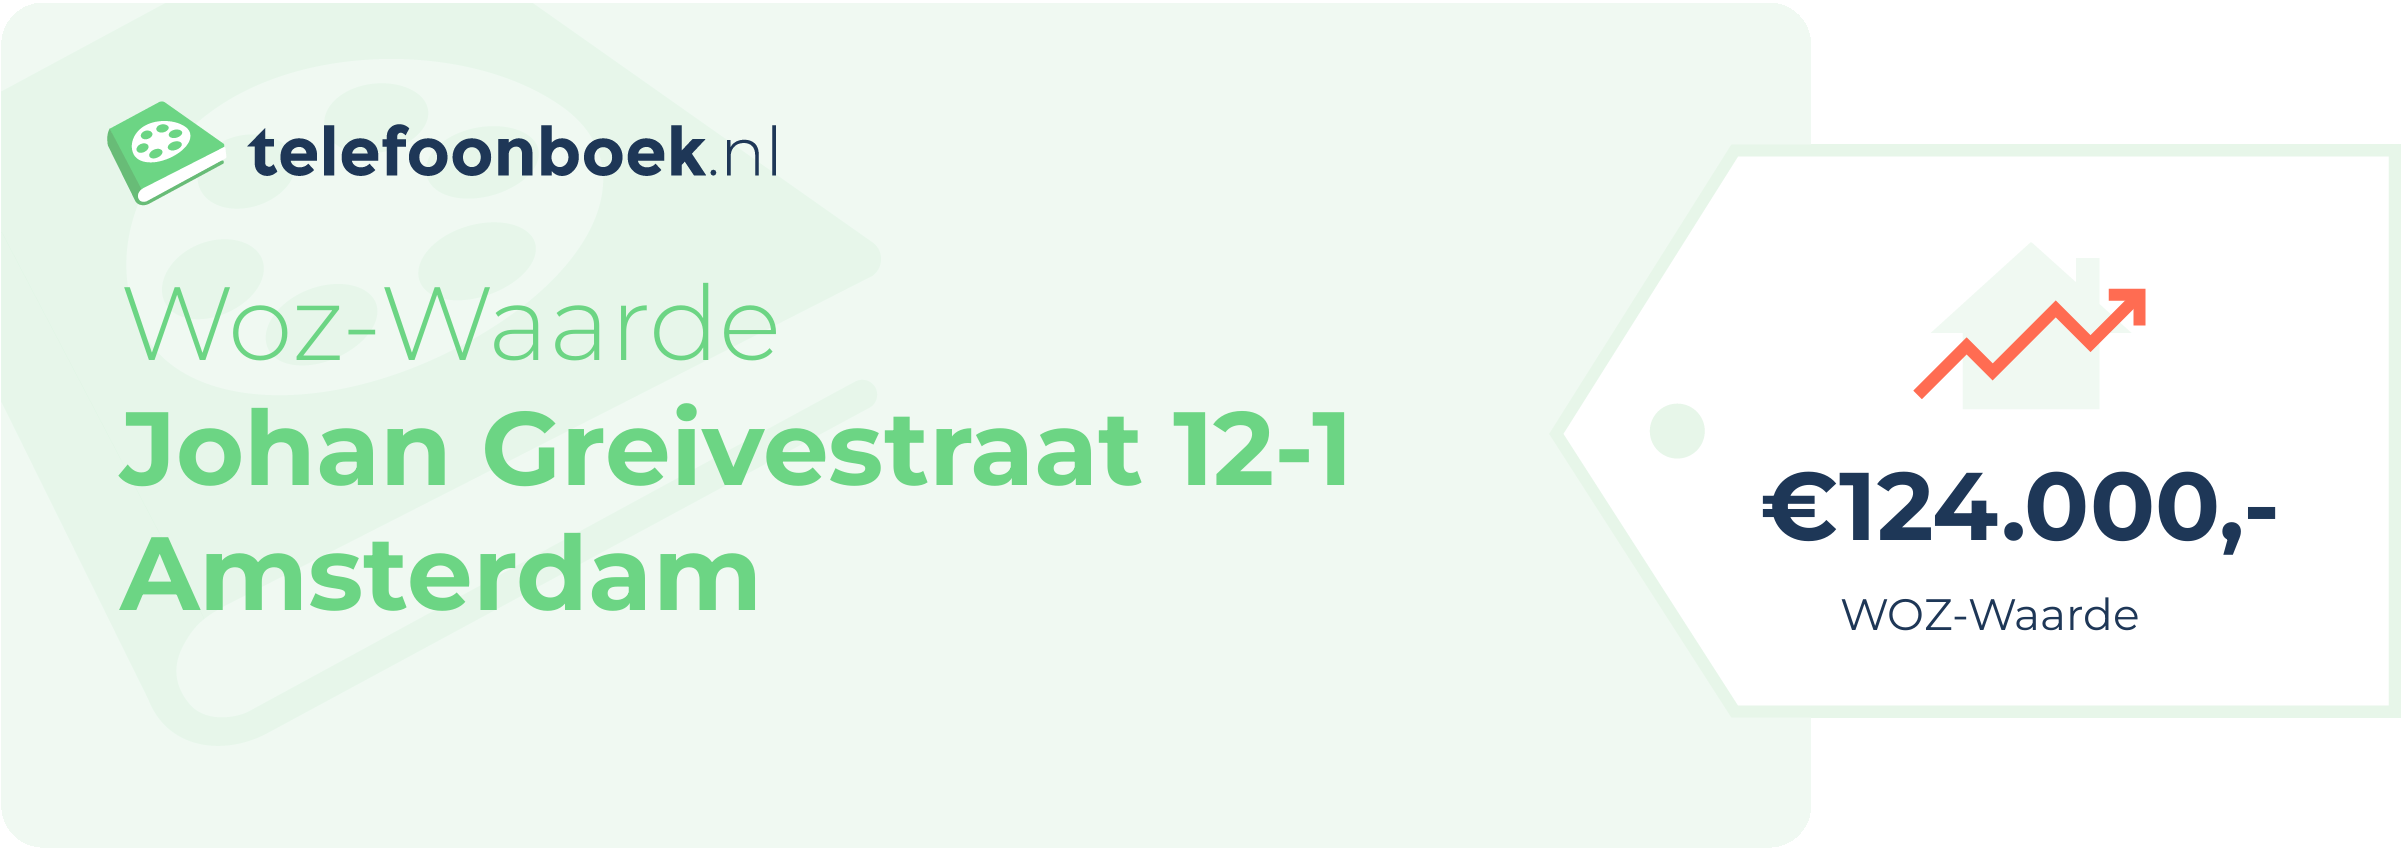 WOZ-waarde Johan Greivestraat 12-1 Amsterdam